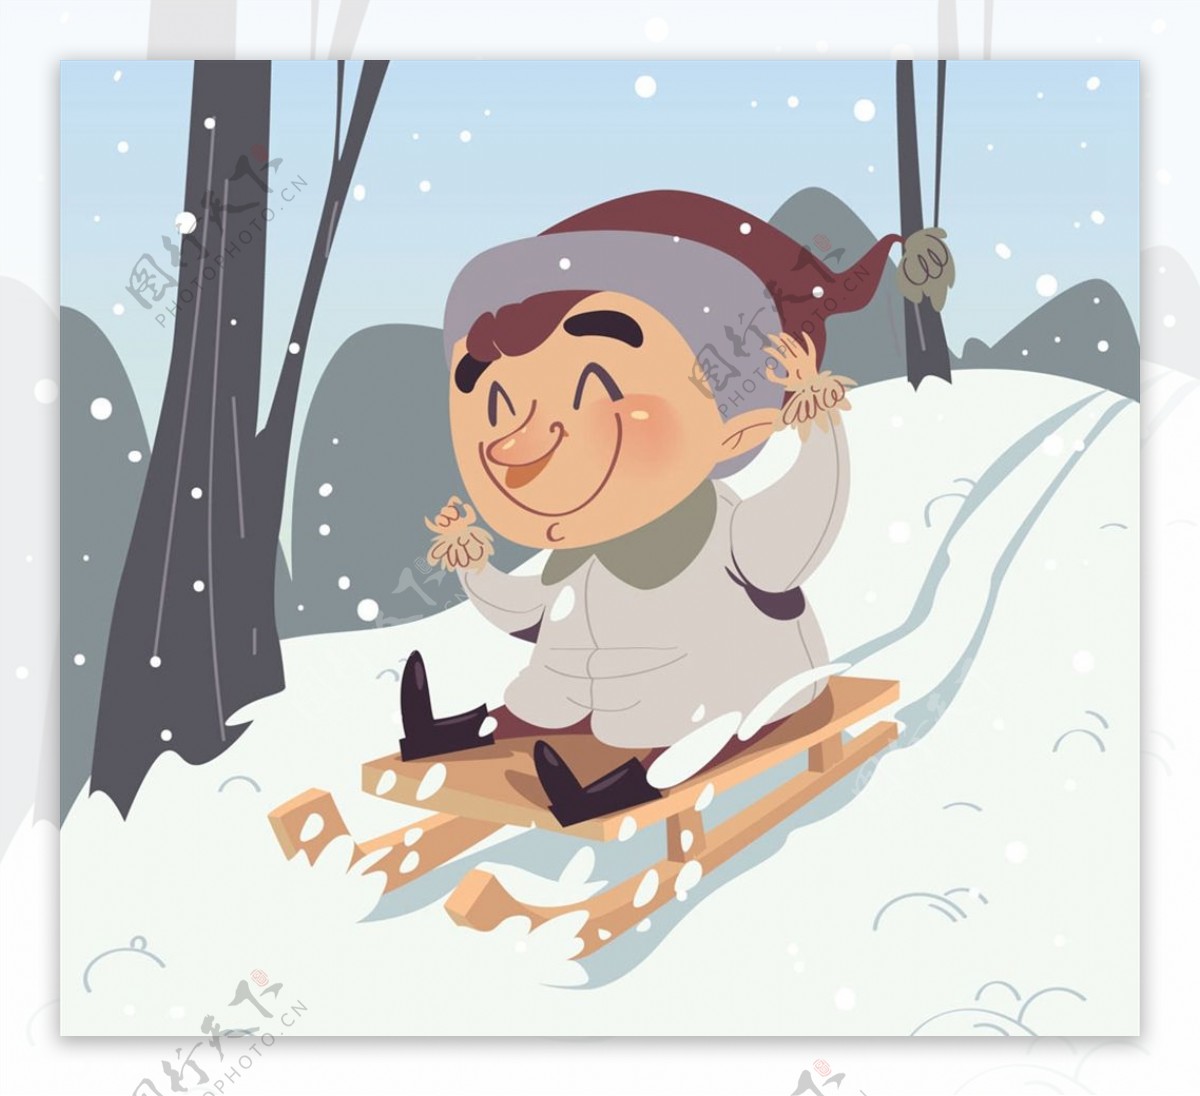 坐雪橇滑雪的男孩图片